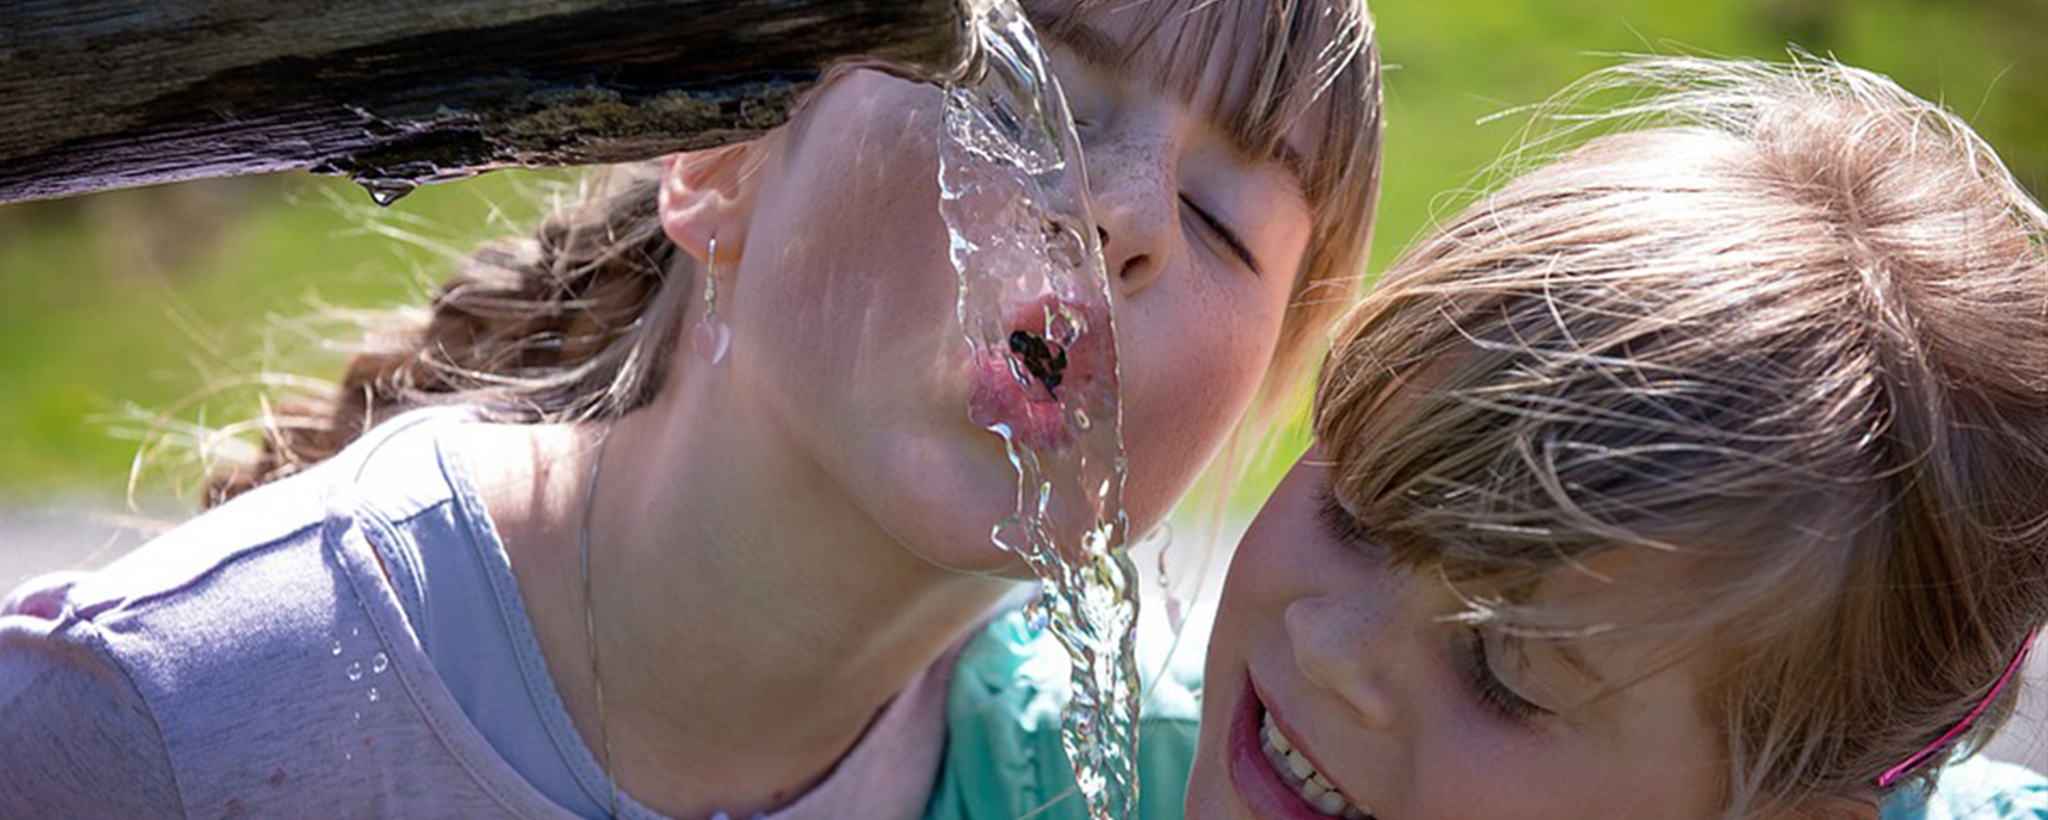 Dos chicas beben de una fuente en un día caluroso